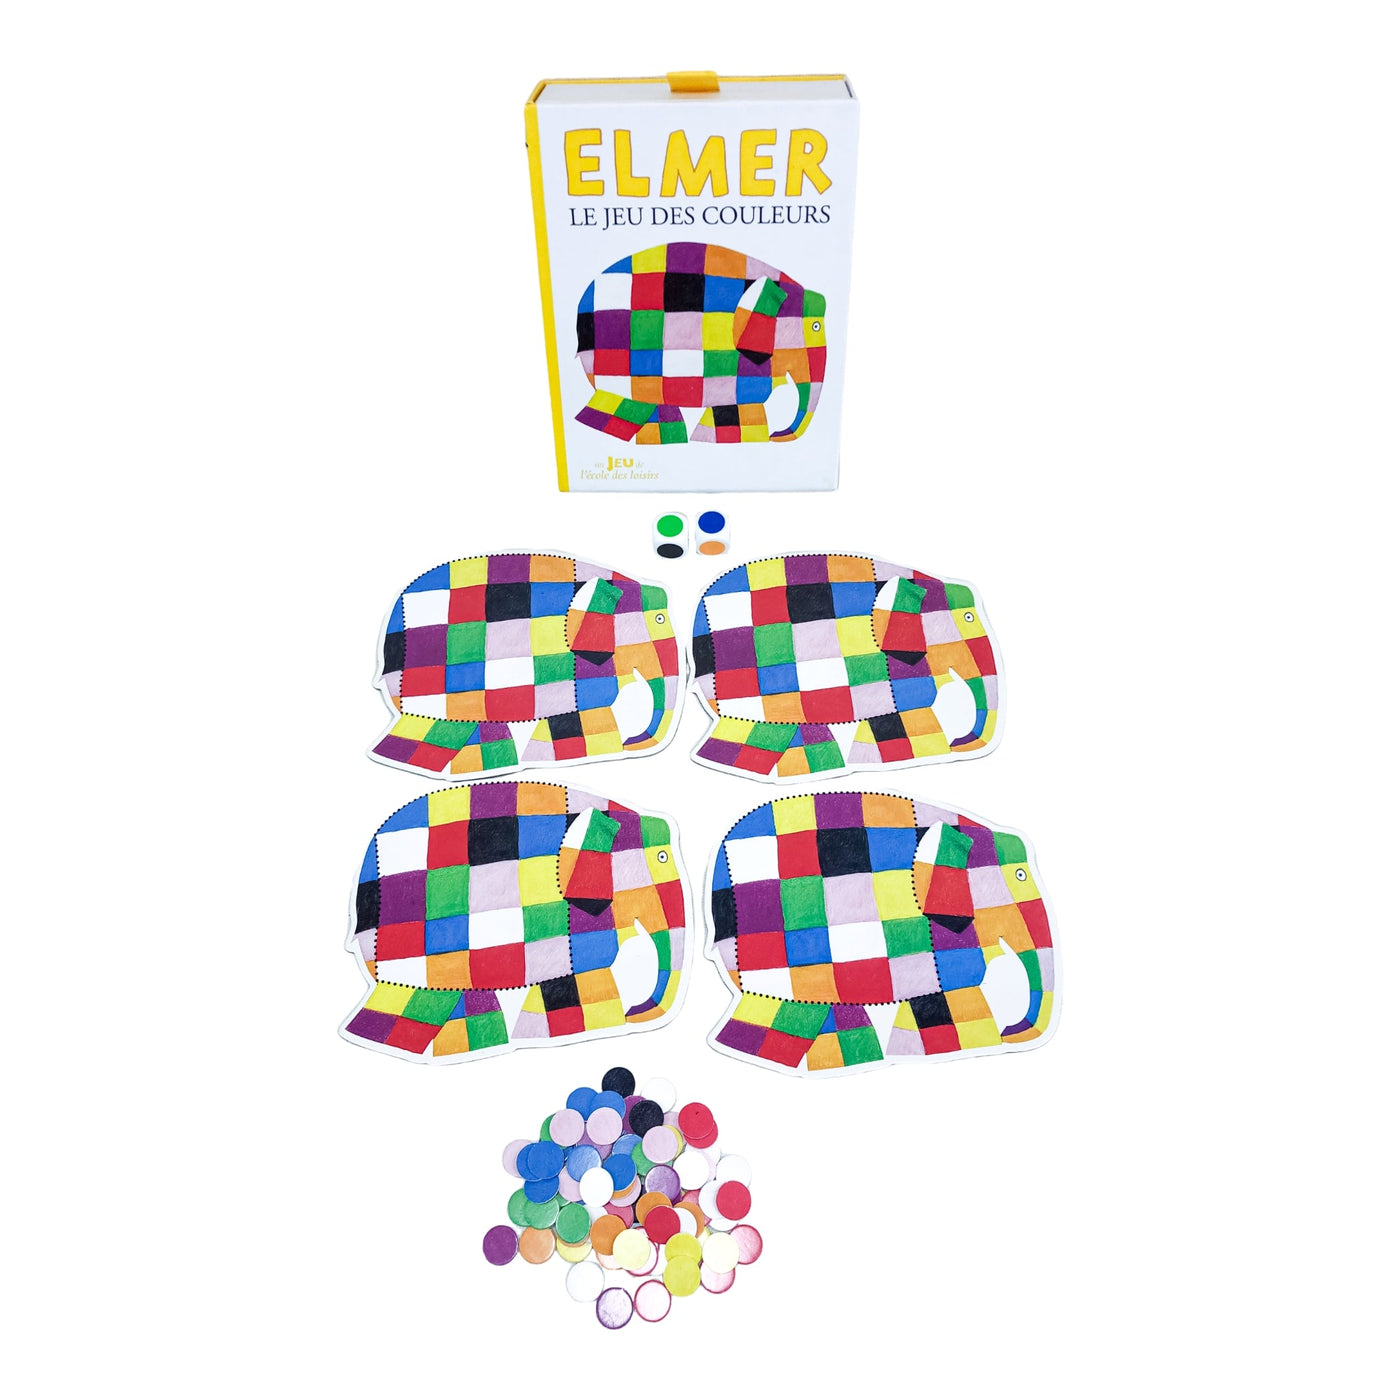 Jeu de plateau "Elmer Le jeu des couleurs" de seconde main en bois et carton pour enfant à partir de 3 ans - Vue 3